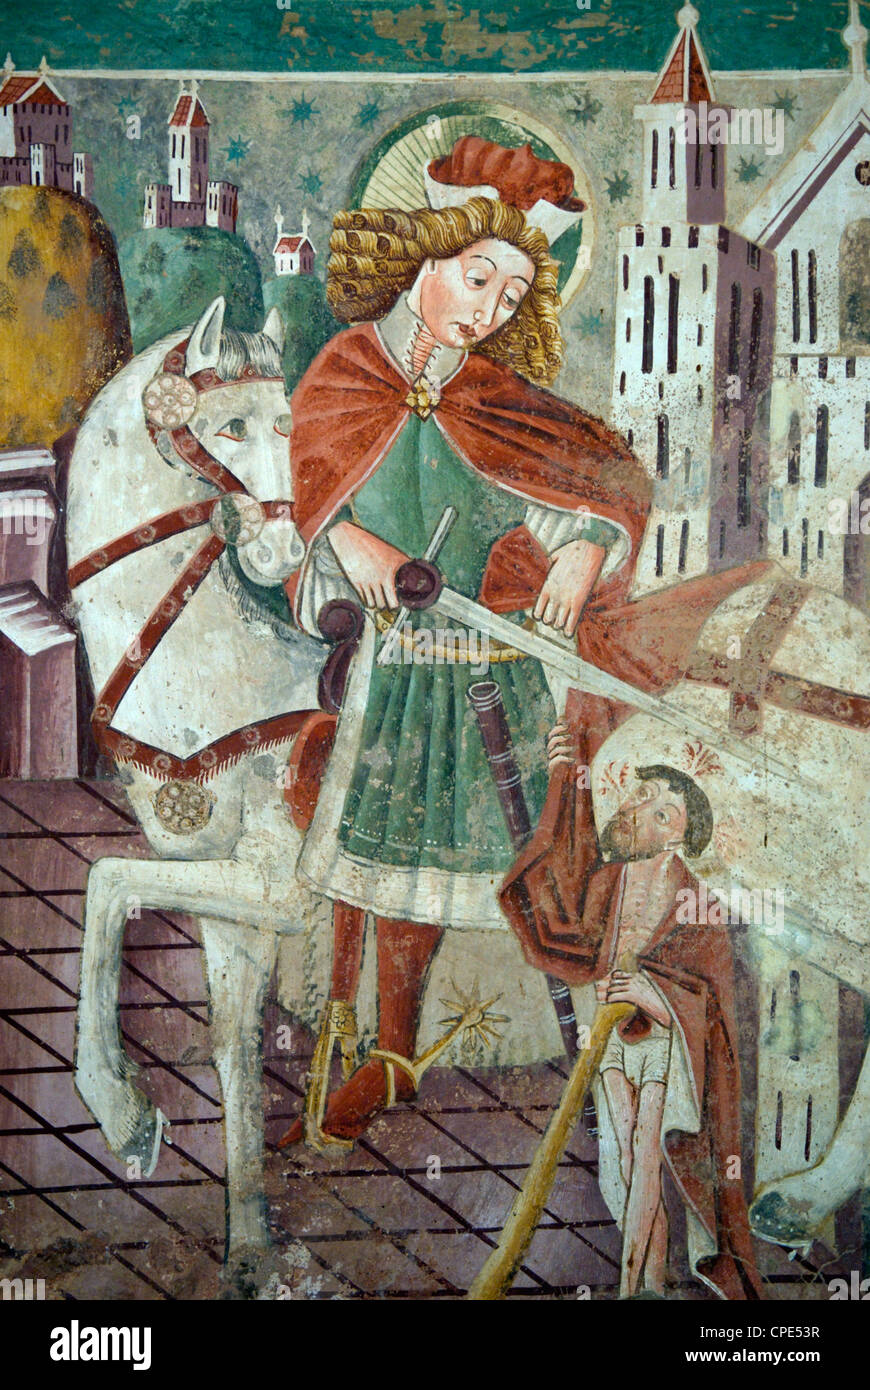 Détail de fresque datant de 1475, la chapelle de Notre Dame de la roche, Beram, Istrie, Croatie, Europe Banque D'Images